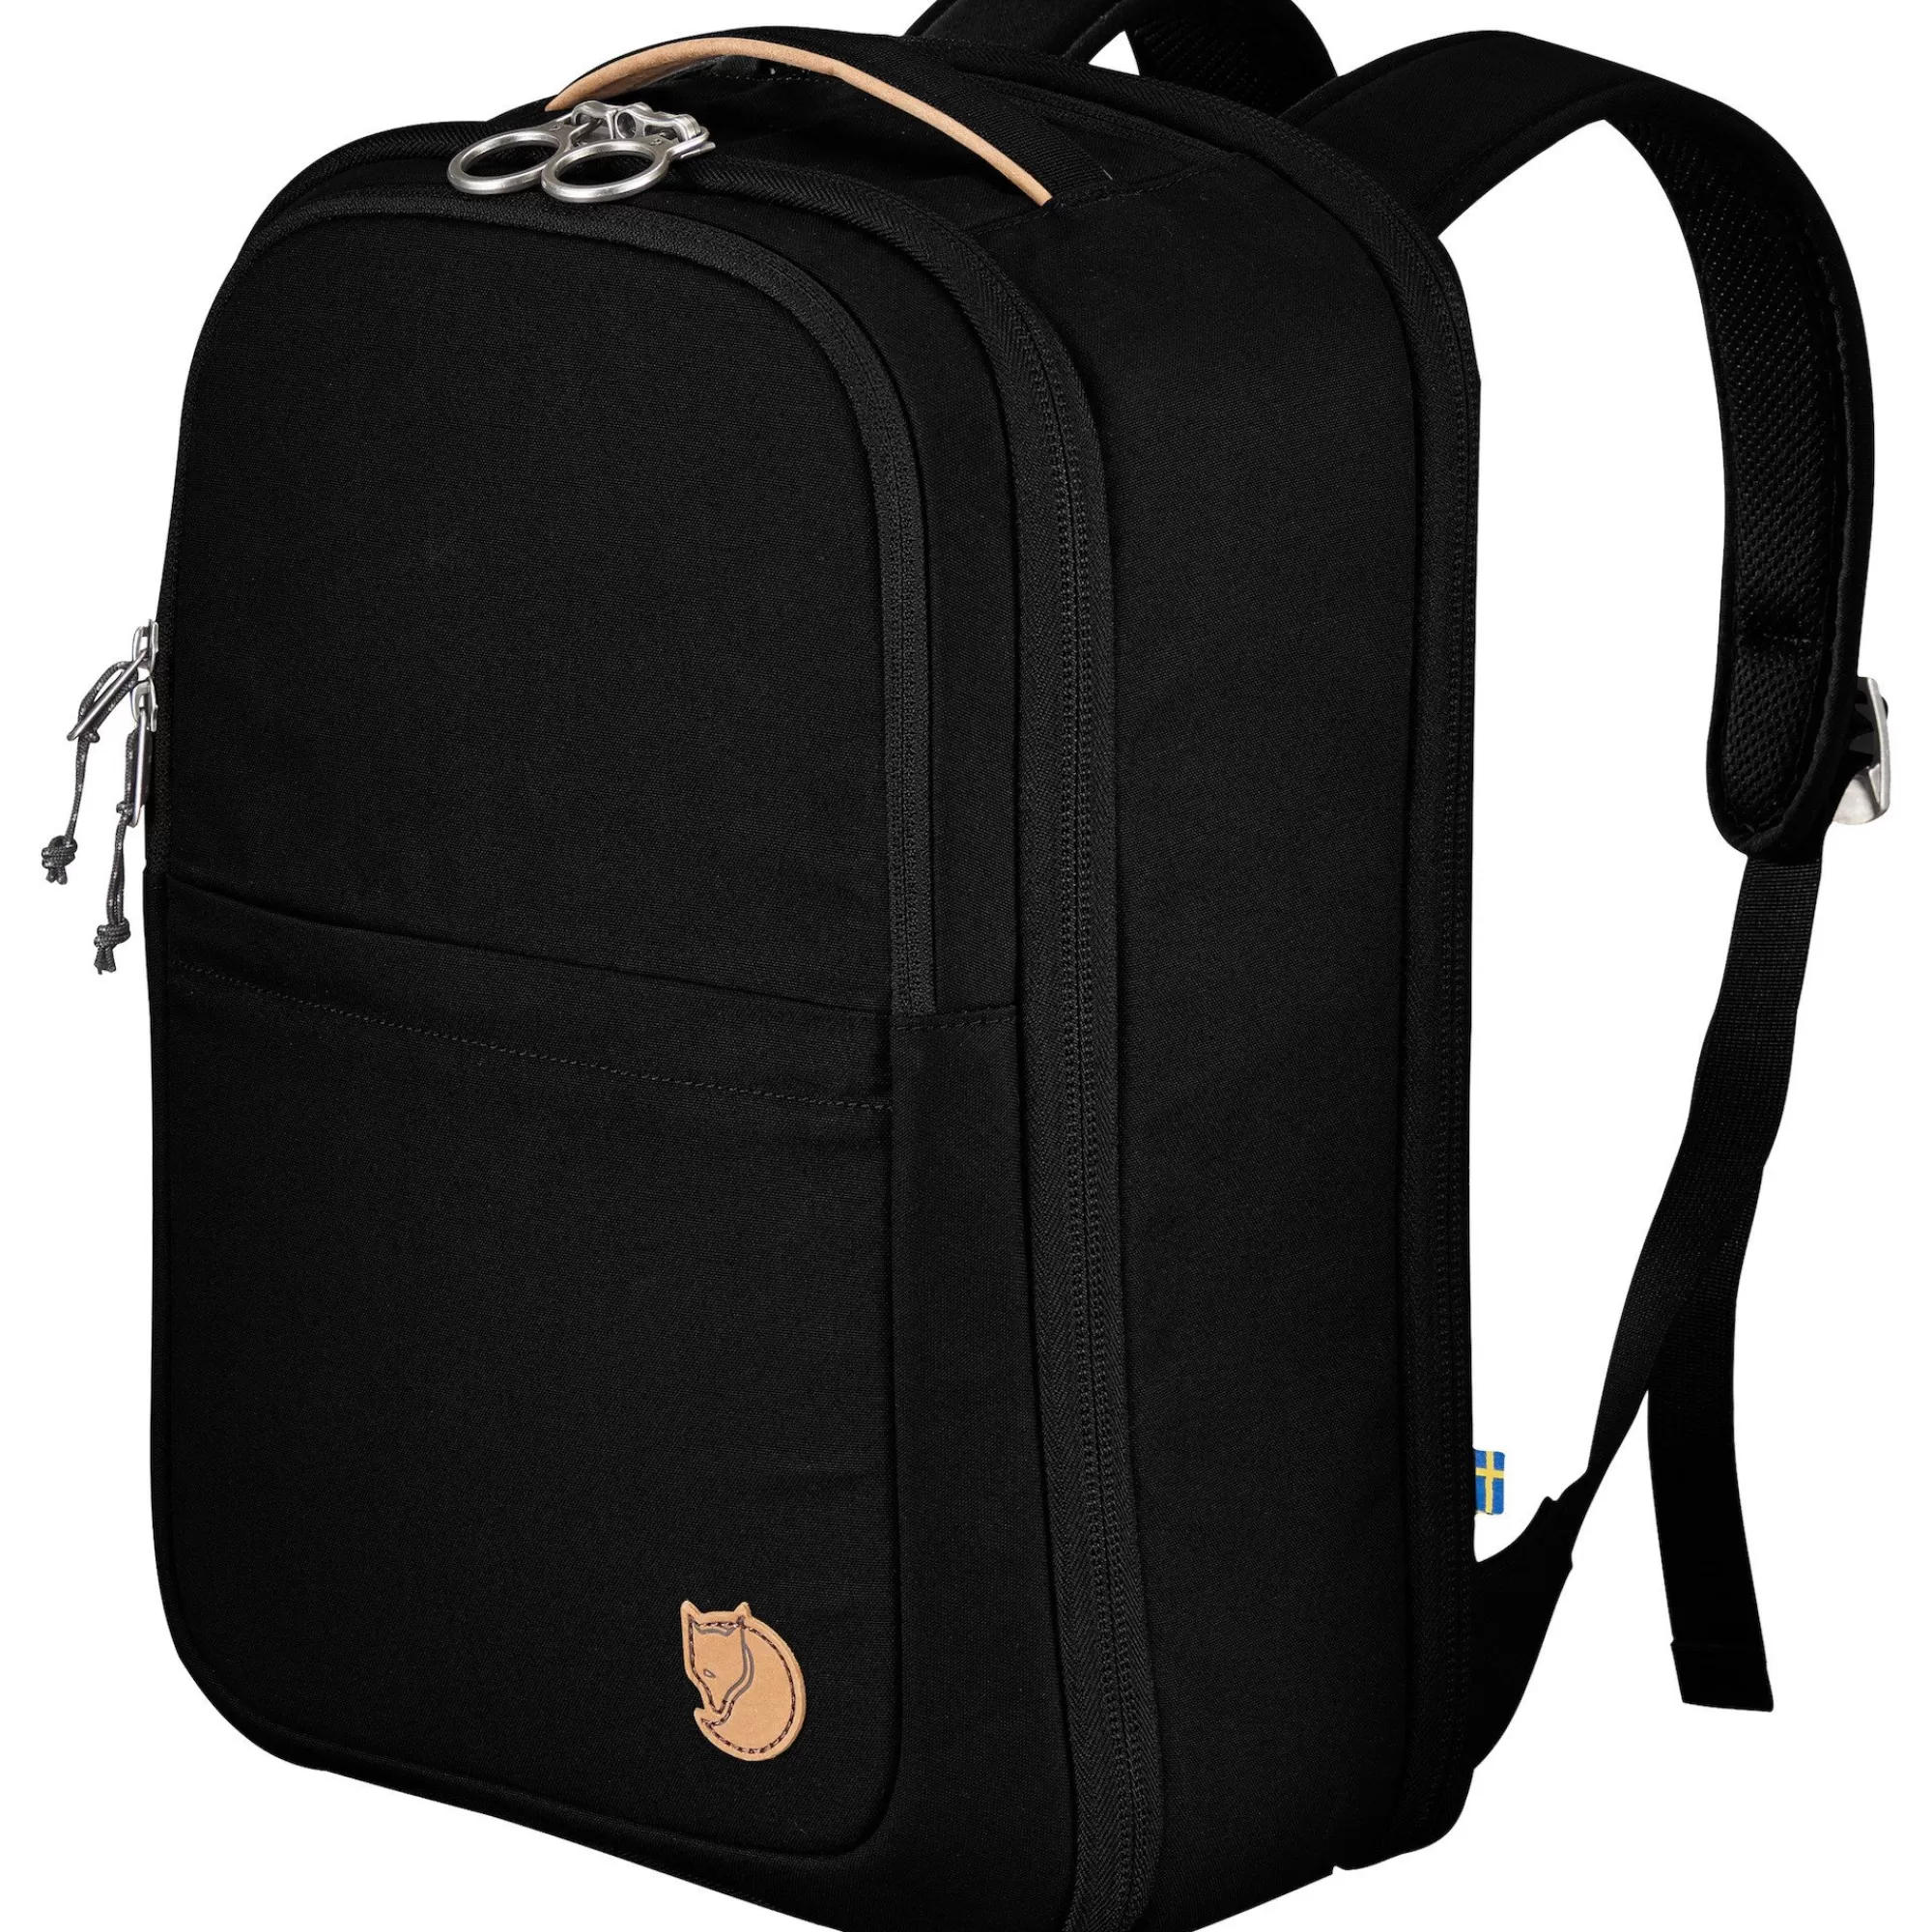 Backpacks & bags*WOMEN Fjallraven Travel Pack Small Black